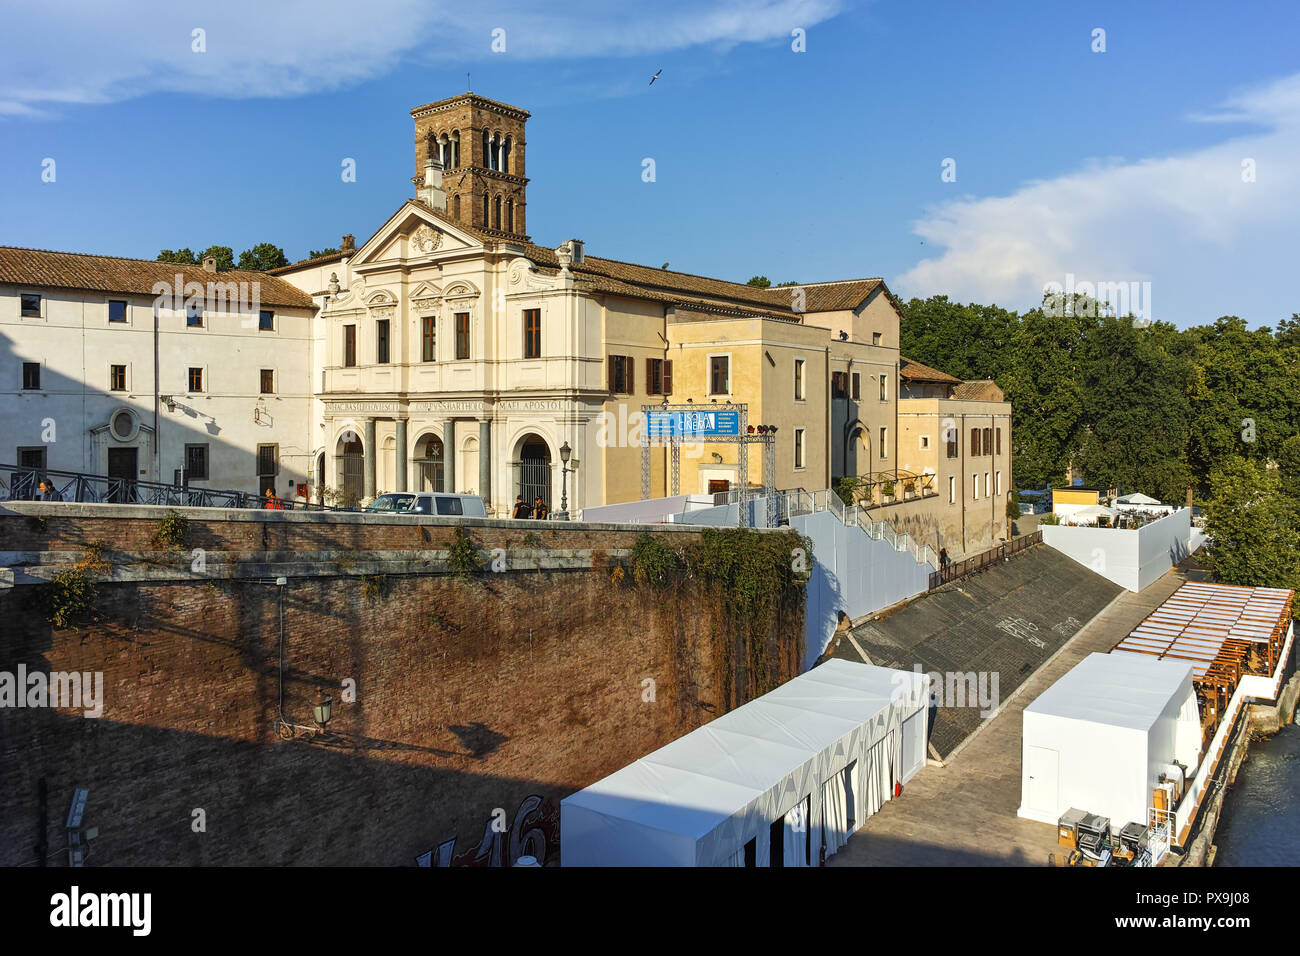 Roma, Italia - 22 Giugno 2017 : Basilica di San Bartolomeo all'isola nella città di Roma, Italia Foto Stock